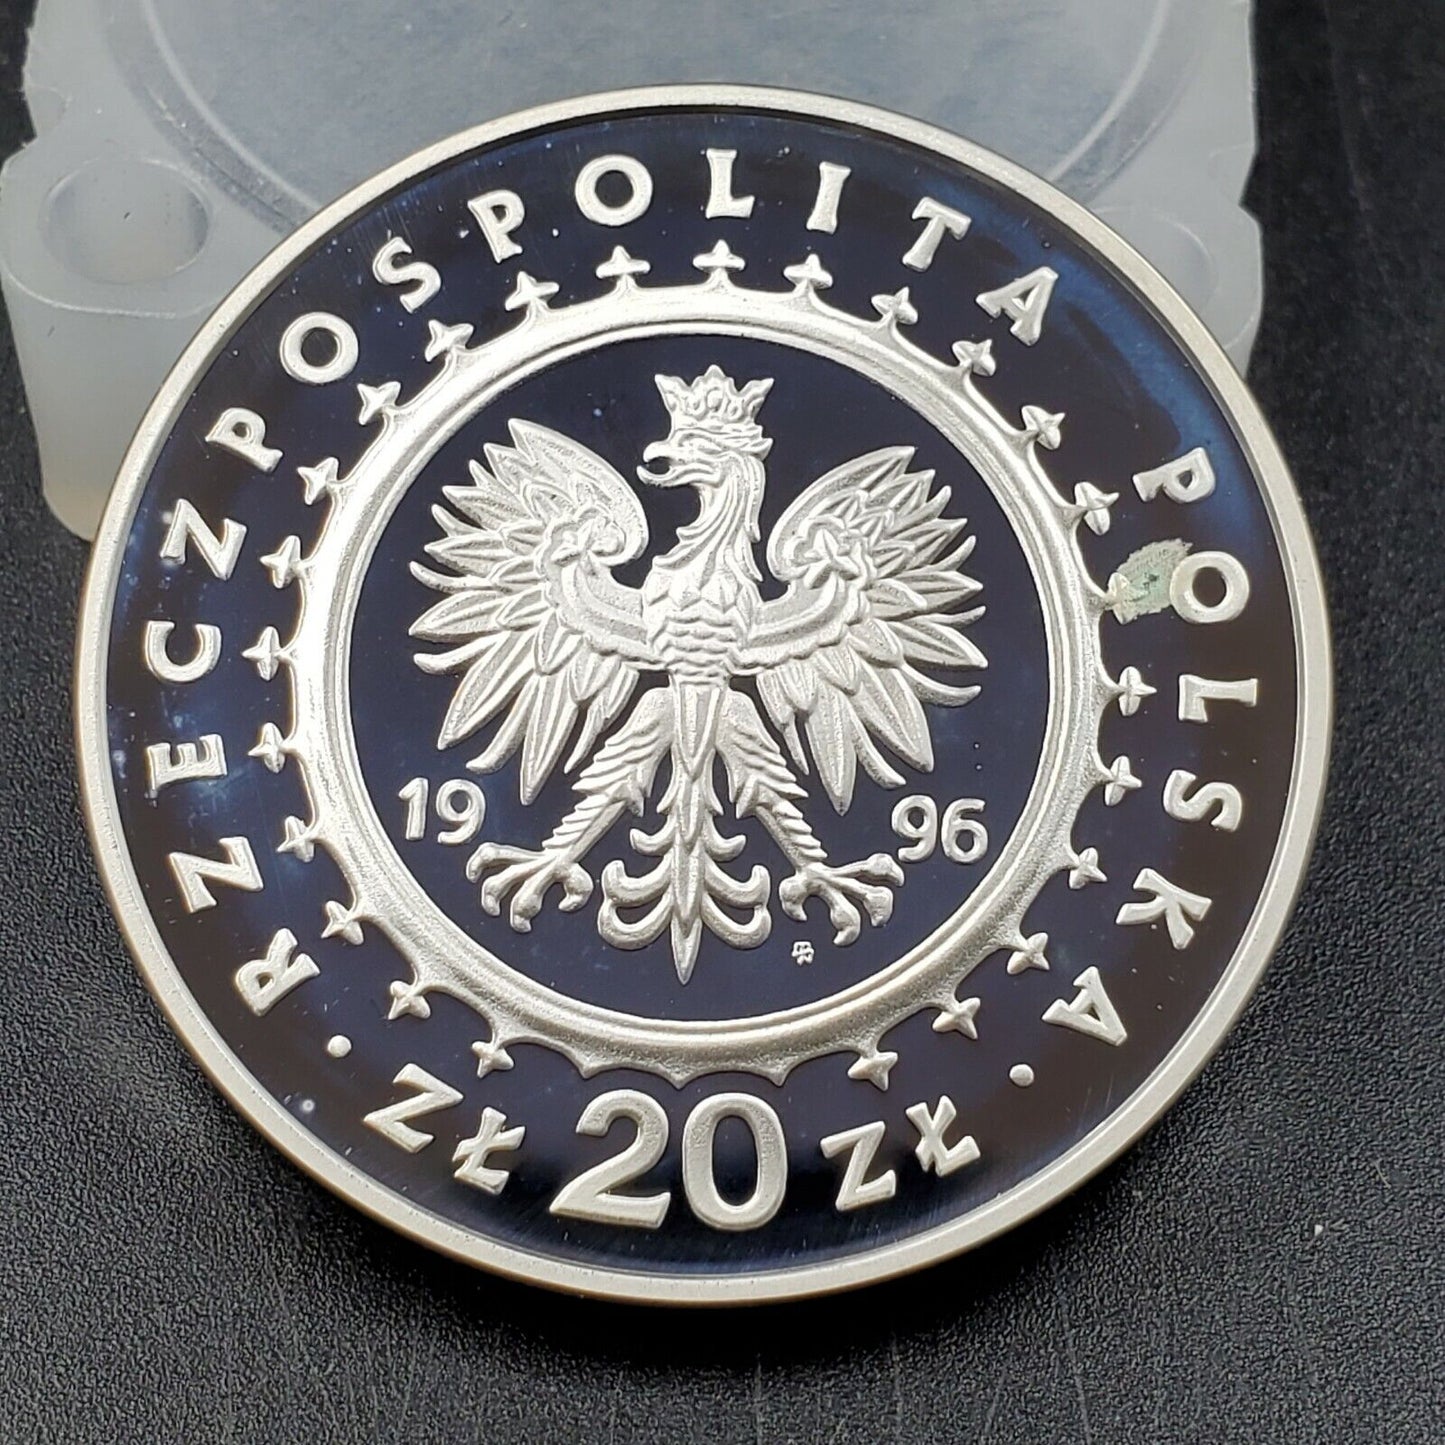 1996 Poland 20 Zlotych Gem Proof Silver Coin Lidzibark Warminski Castle 20k mint